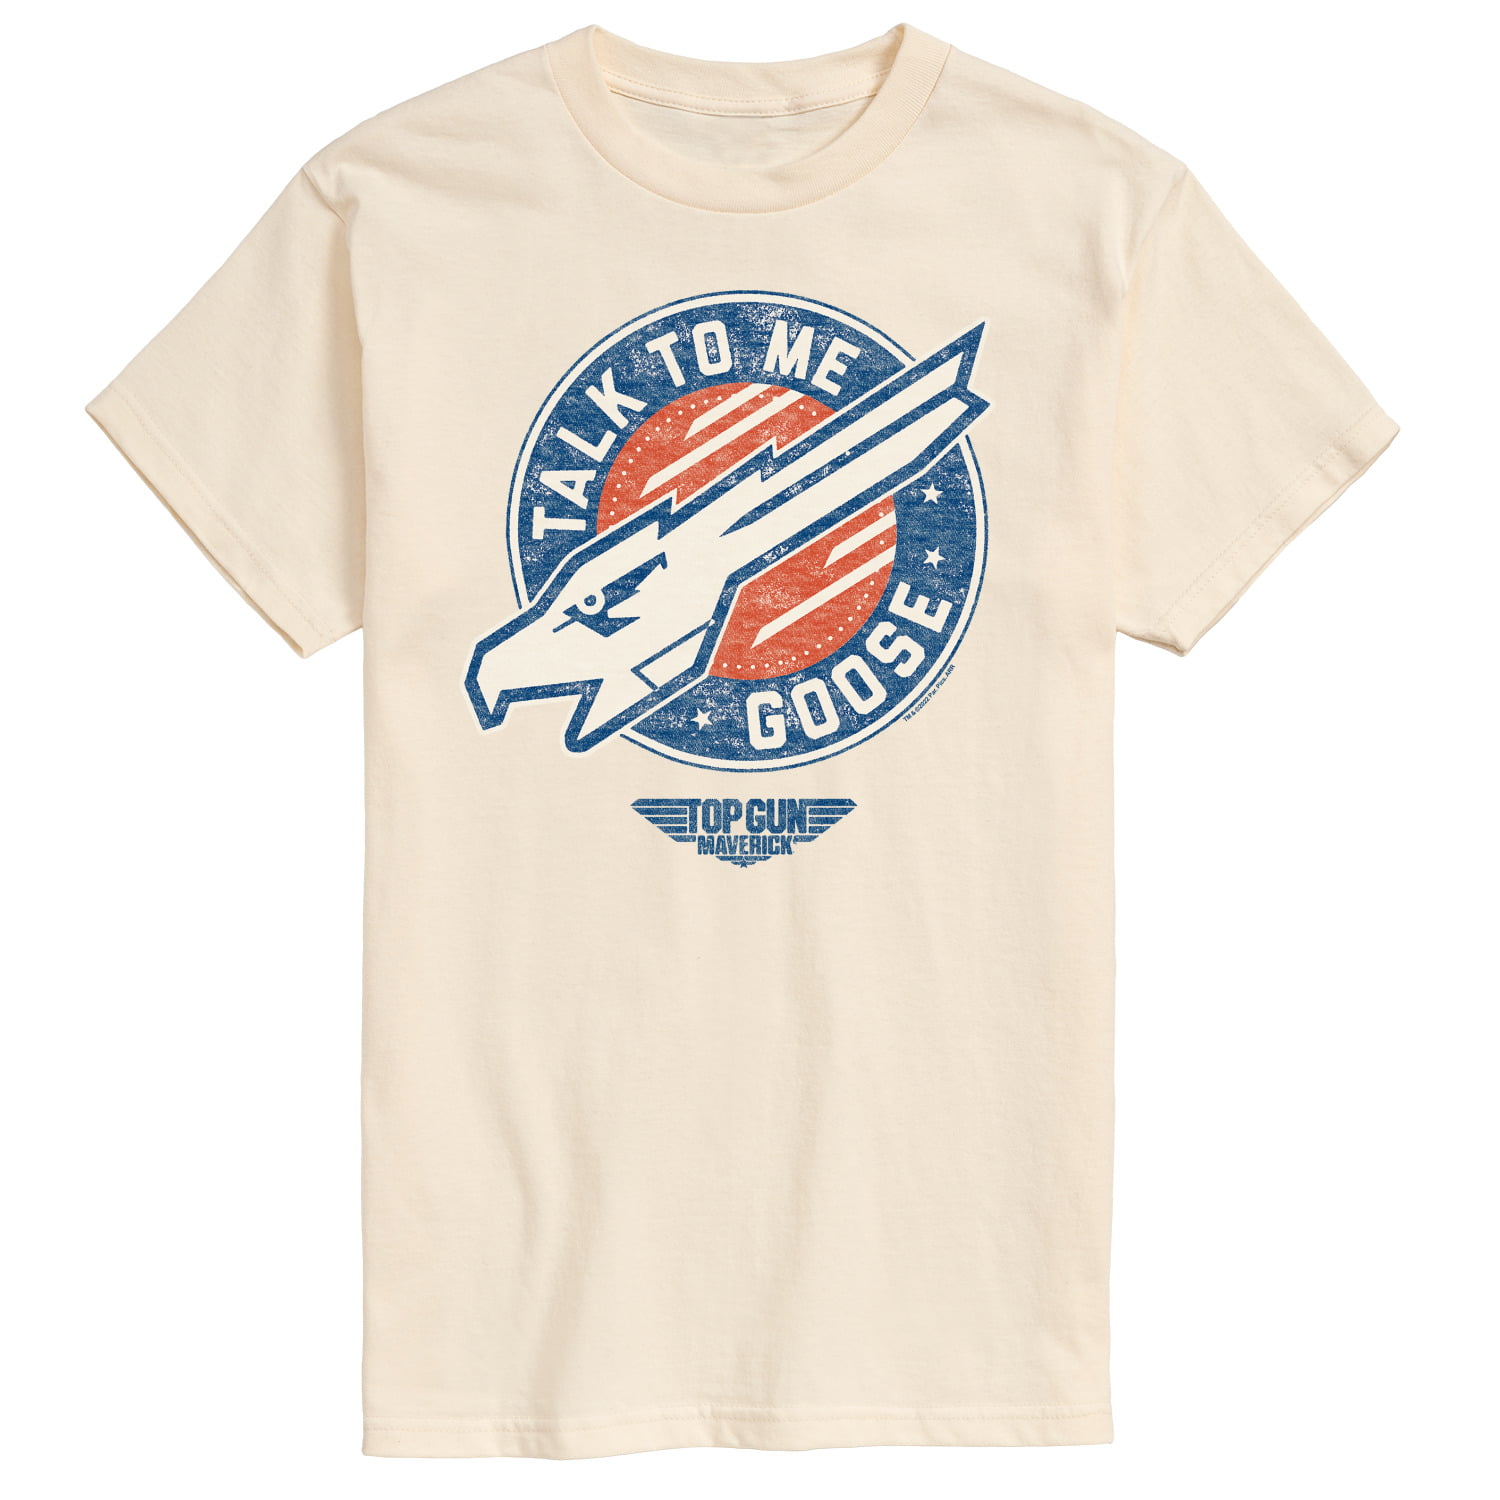 Top Gun: Maverick Men\'s Goose - T-Shirt - Talk Short To Me Sleeve Graphic